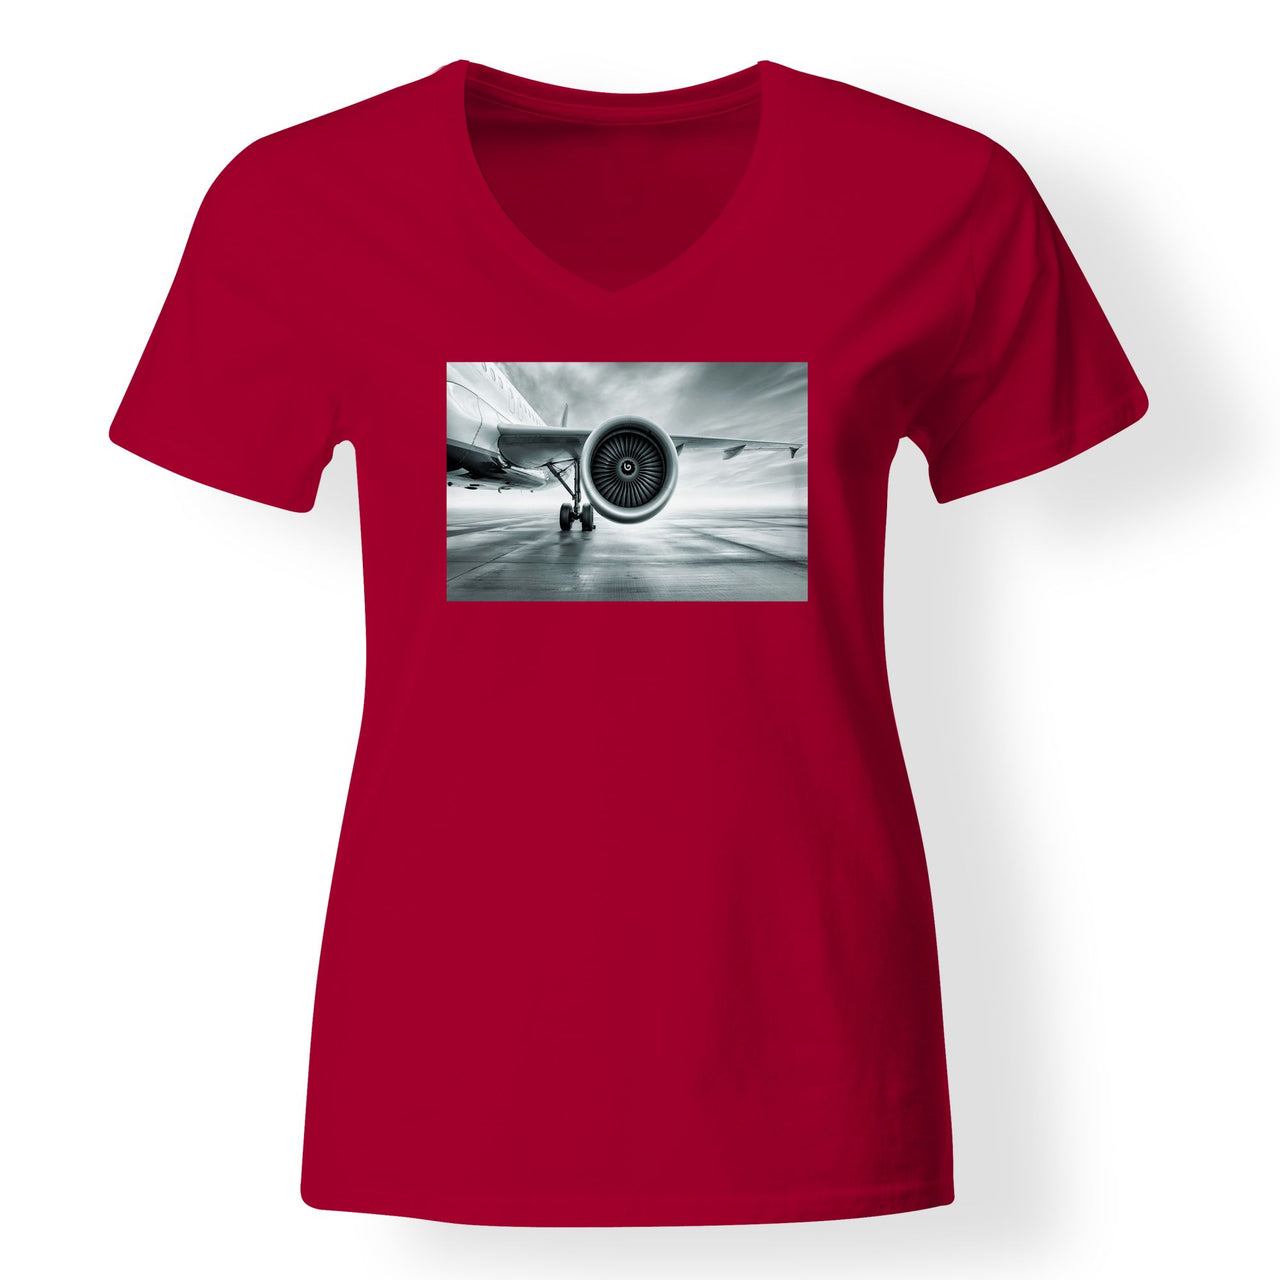 Super Cool Airliner Jet Engine Designed V-Neck T-Shirts